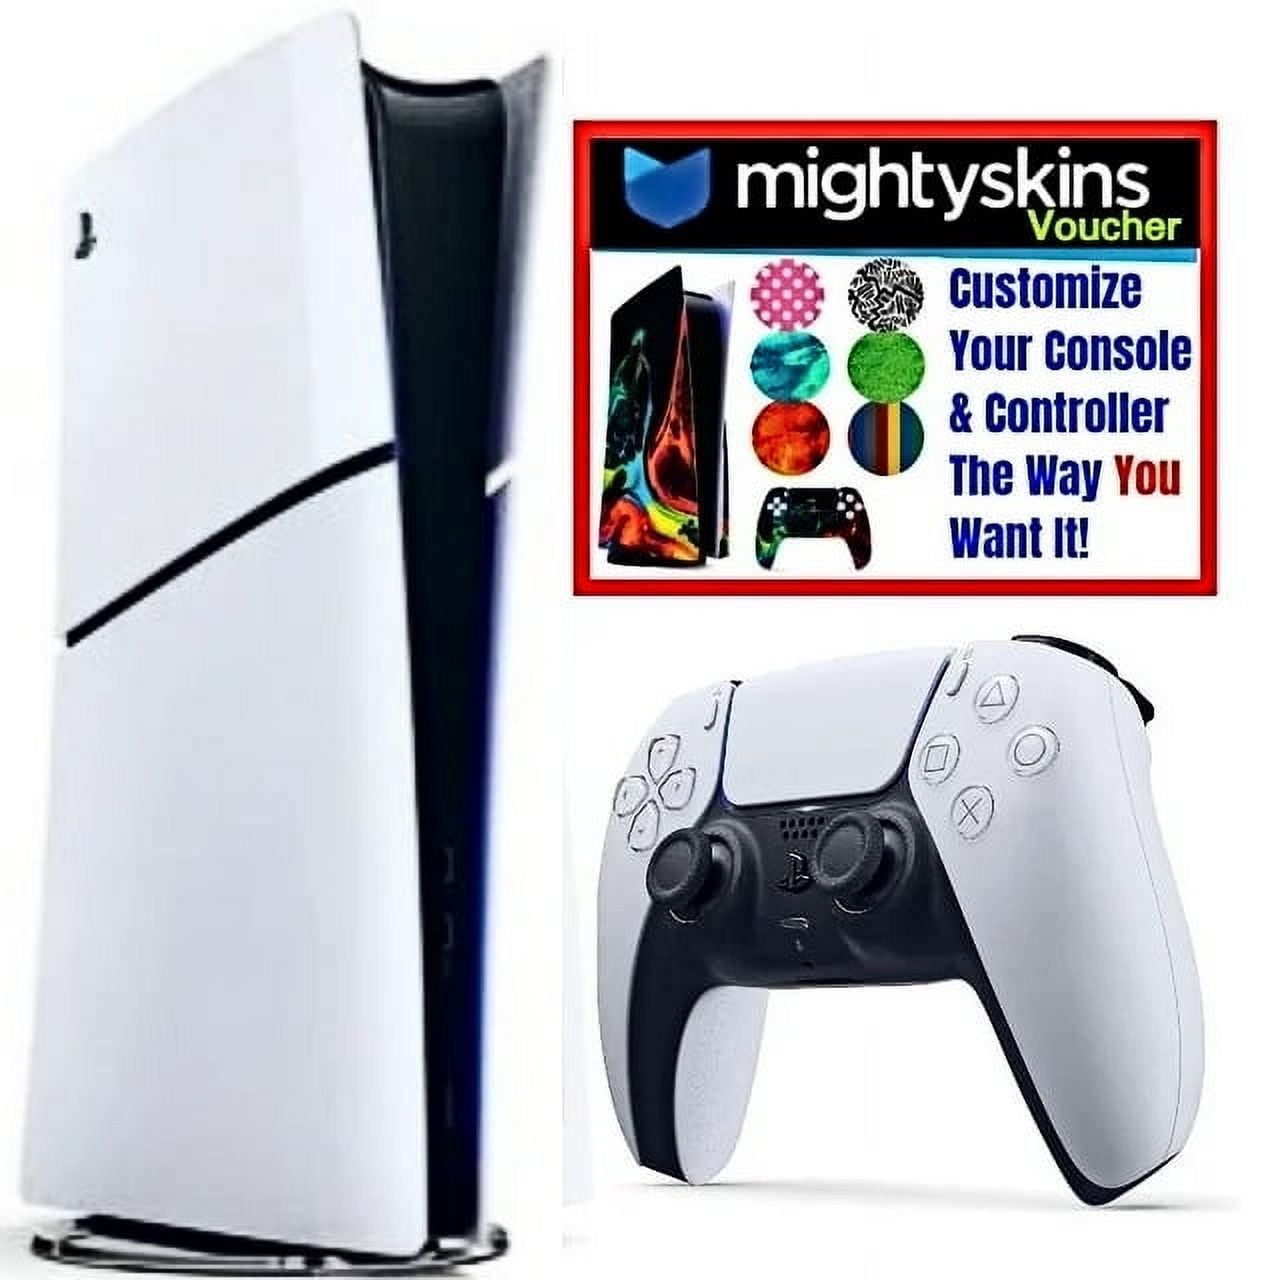 Sony PlayStation 5 Digital Console + Kit de accesorios